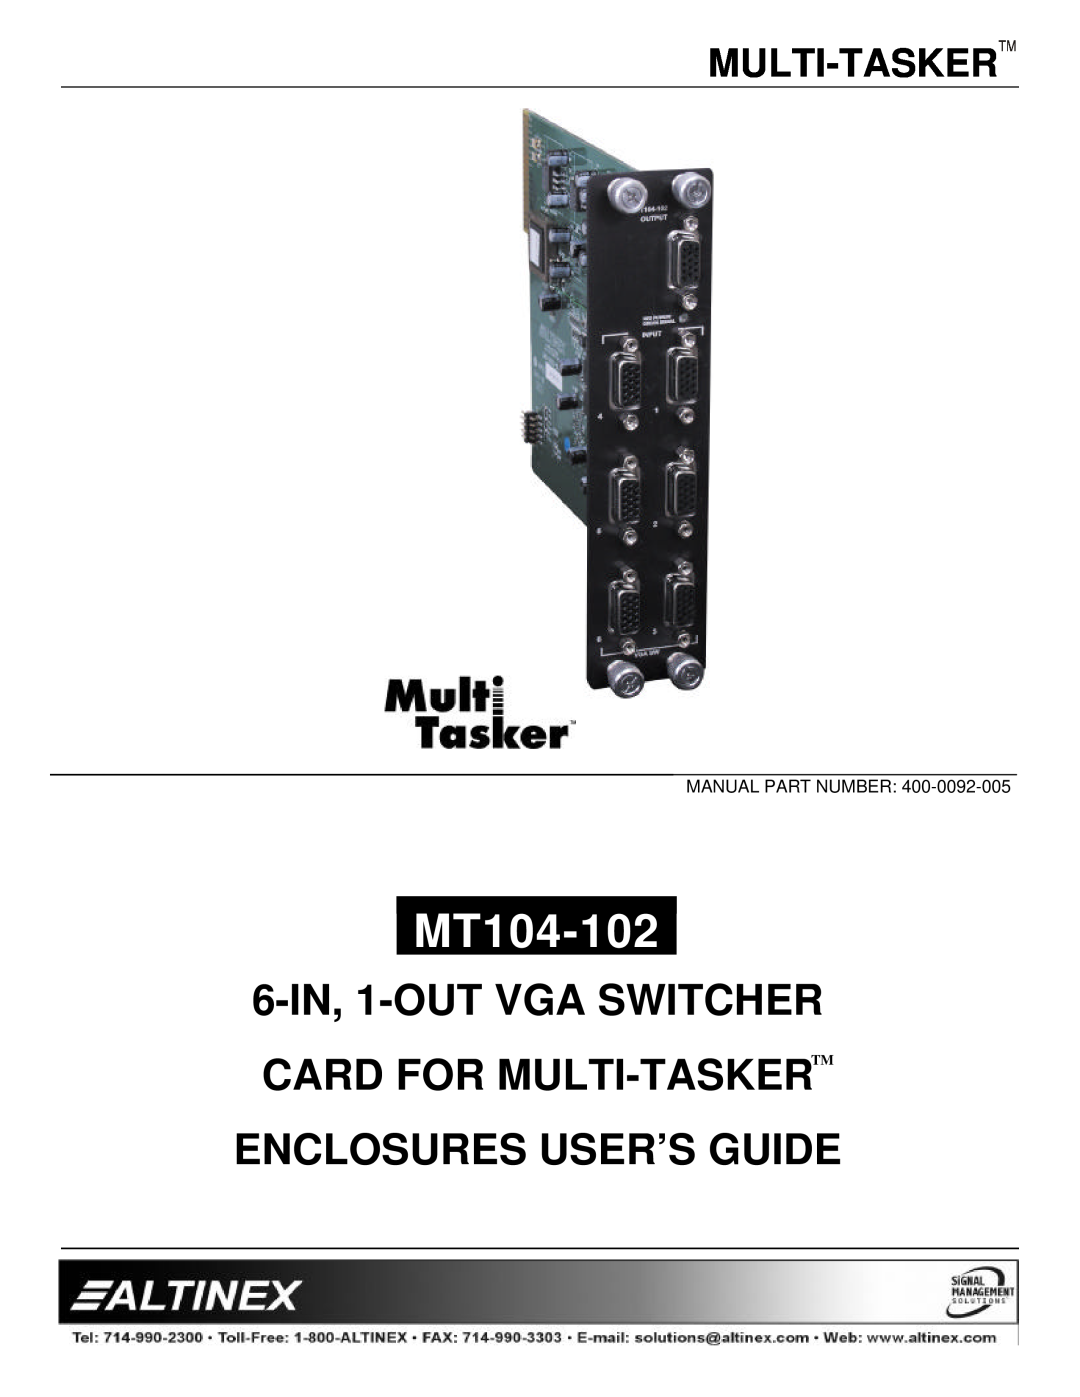 Altinex MT104-102 manual Multi-Tasker, 6-IN, 1-OUT VGA SWITCHER CARD FOR MULTI-TASKERTM, Enclosures User’S Guide 